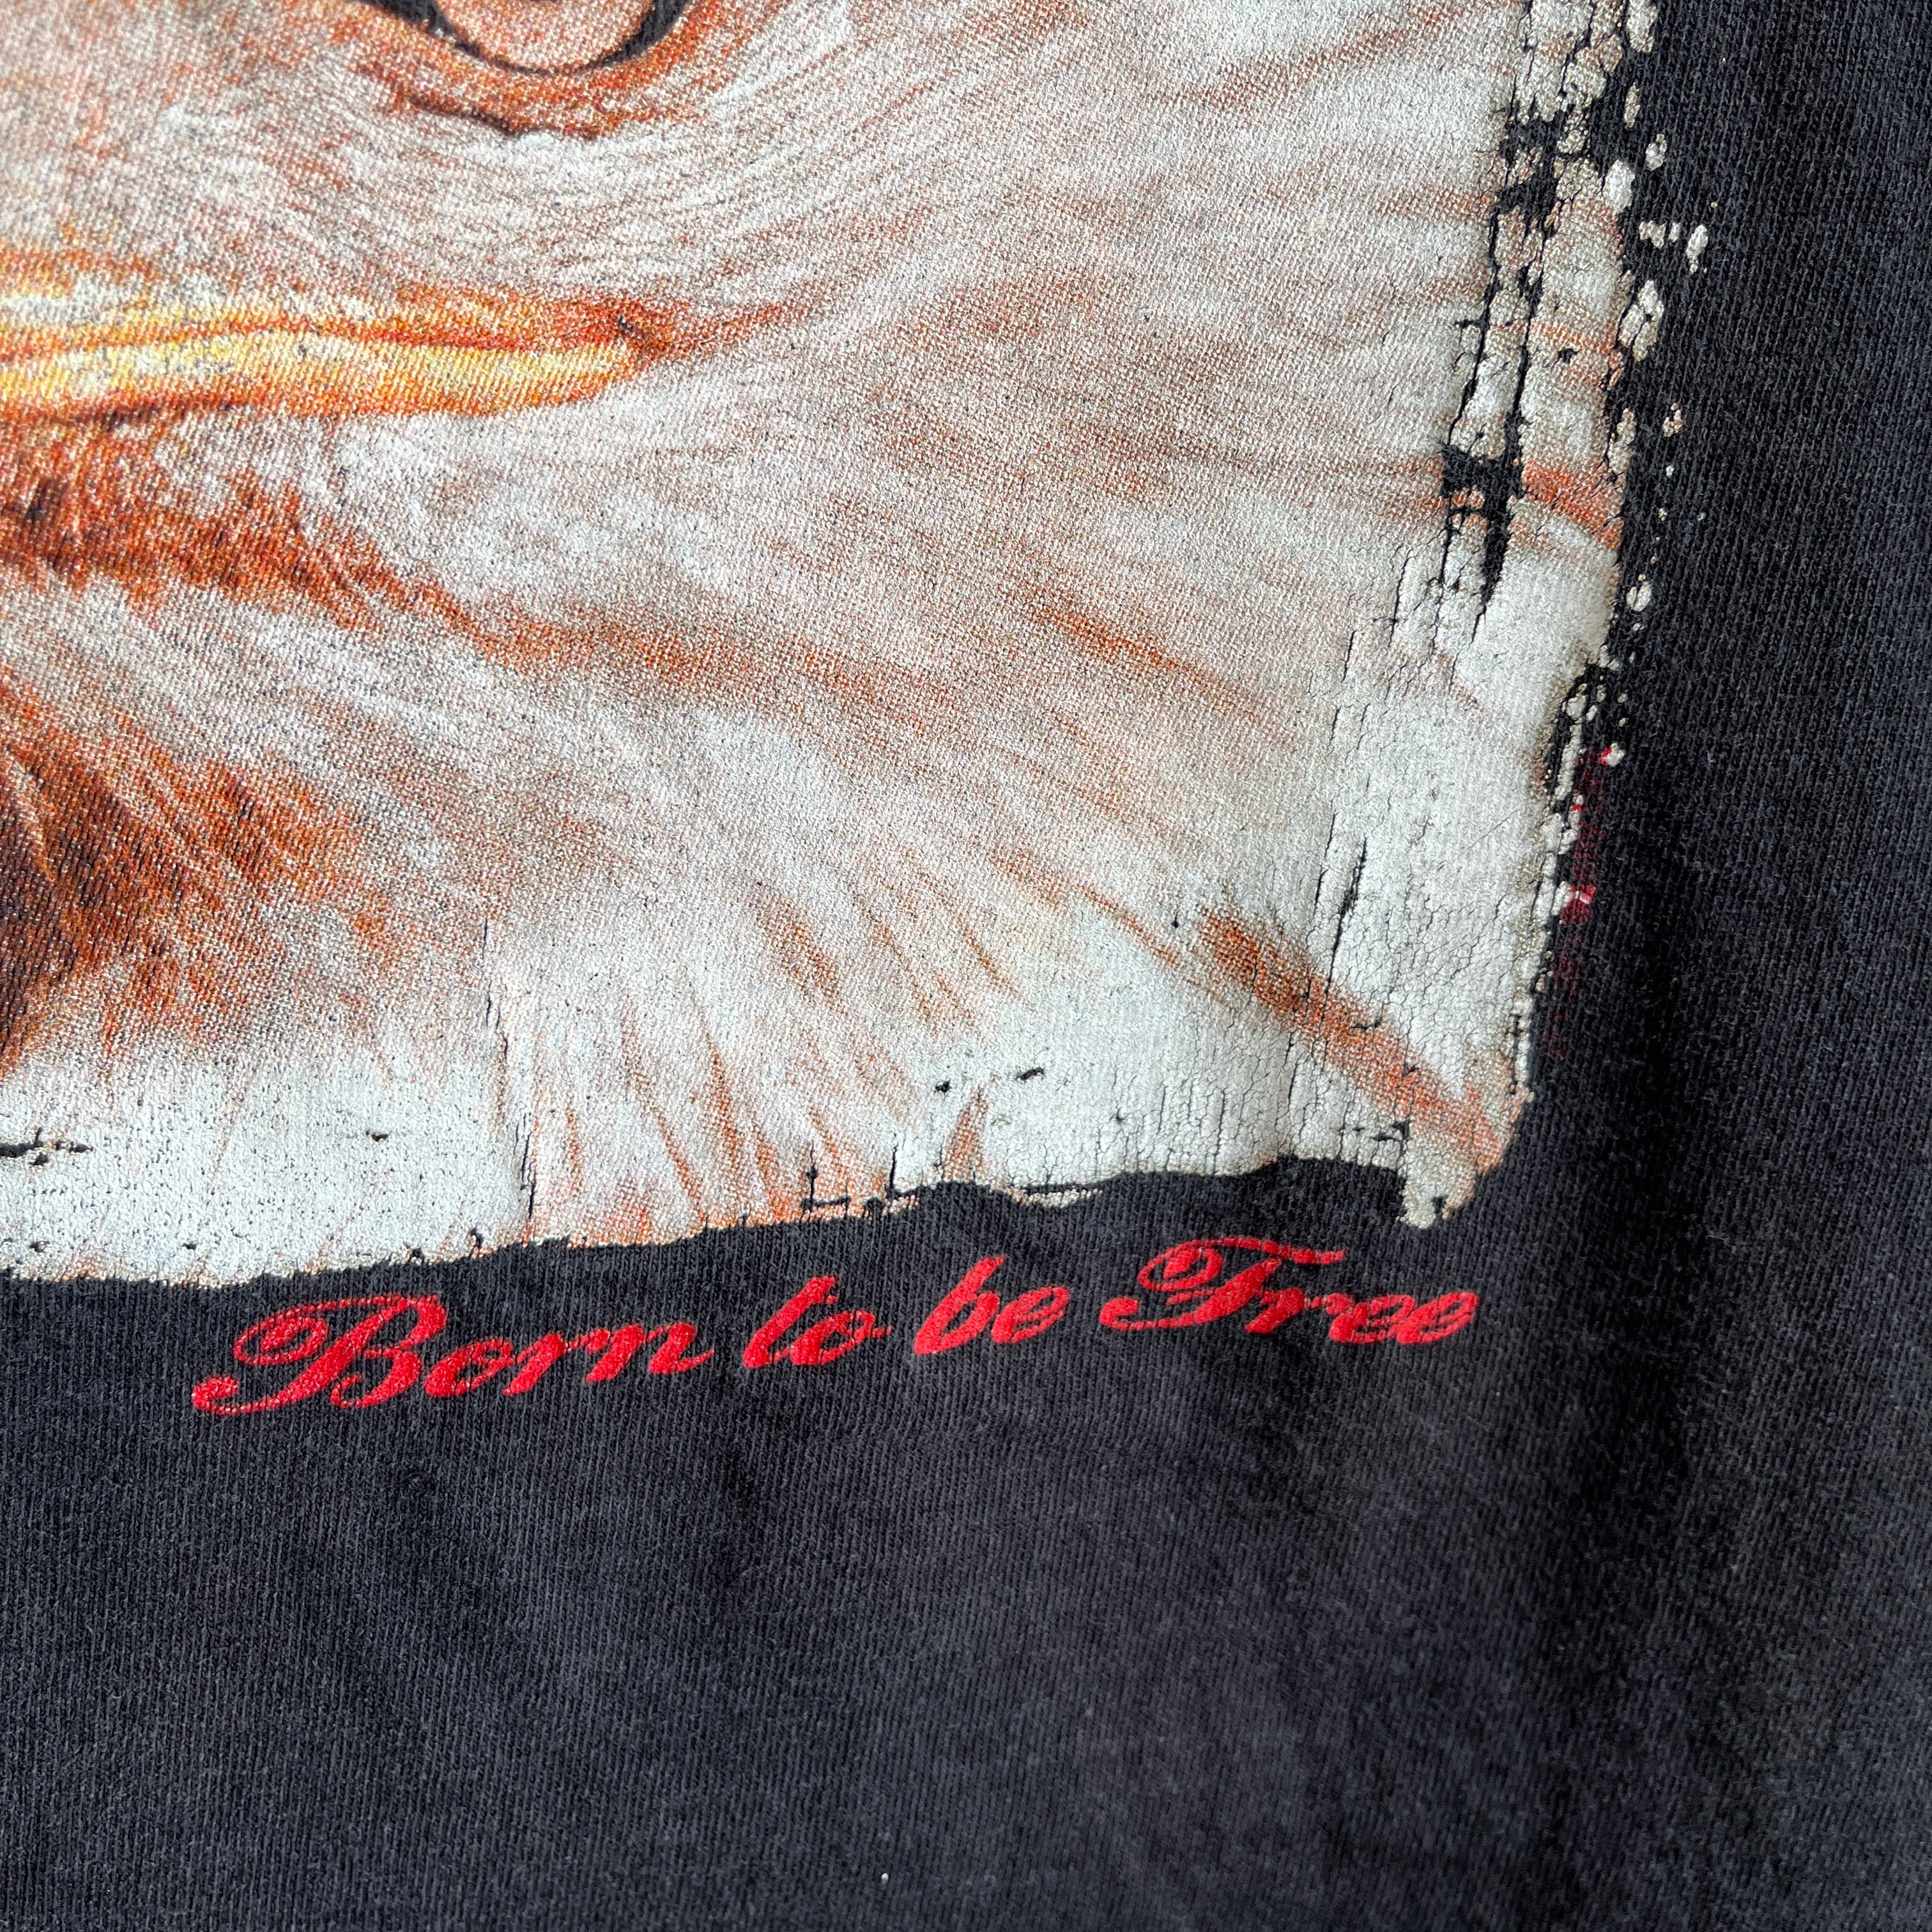 T-shirt Aigle né pour être libre des années 1990